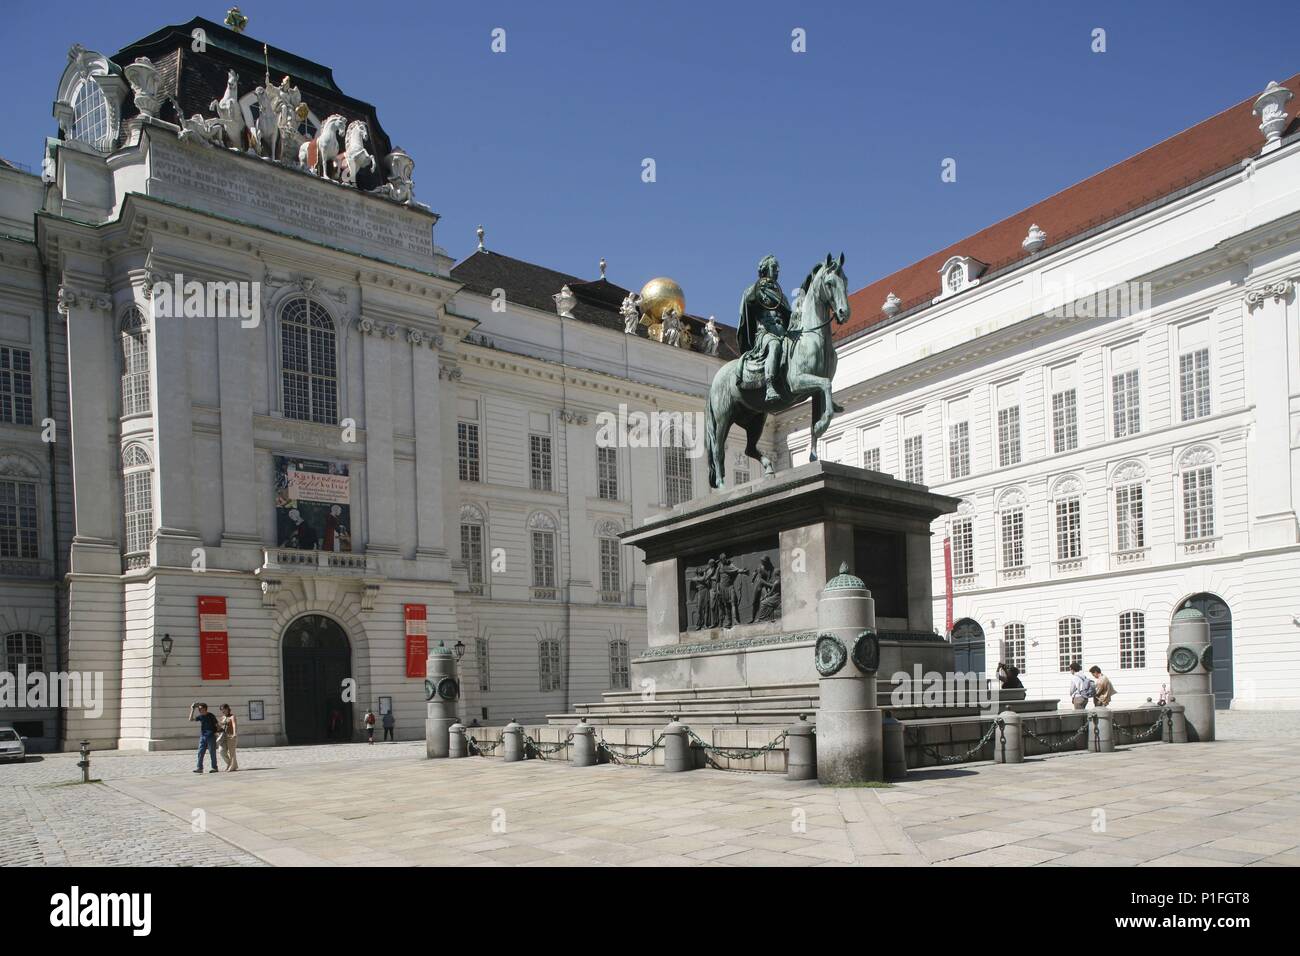 . Viena / Wien; Josefsplatz (Plaza de José) formando parte de la 'Alte Hofburg'; en el centro estatua ecuestre del emperador Josef II; al fondo / izquierda edificio que alberga la Biblioteca Nacional (Nationalbibliothek). Stock Photo